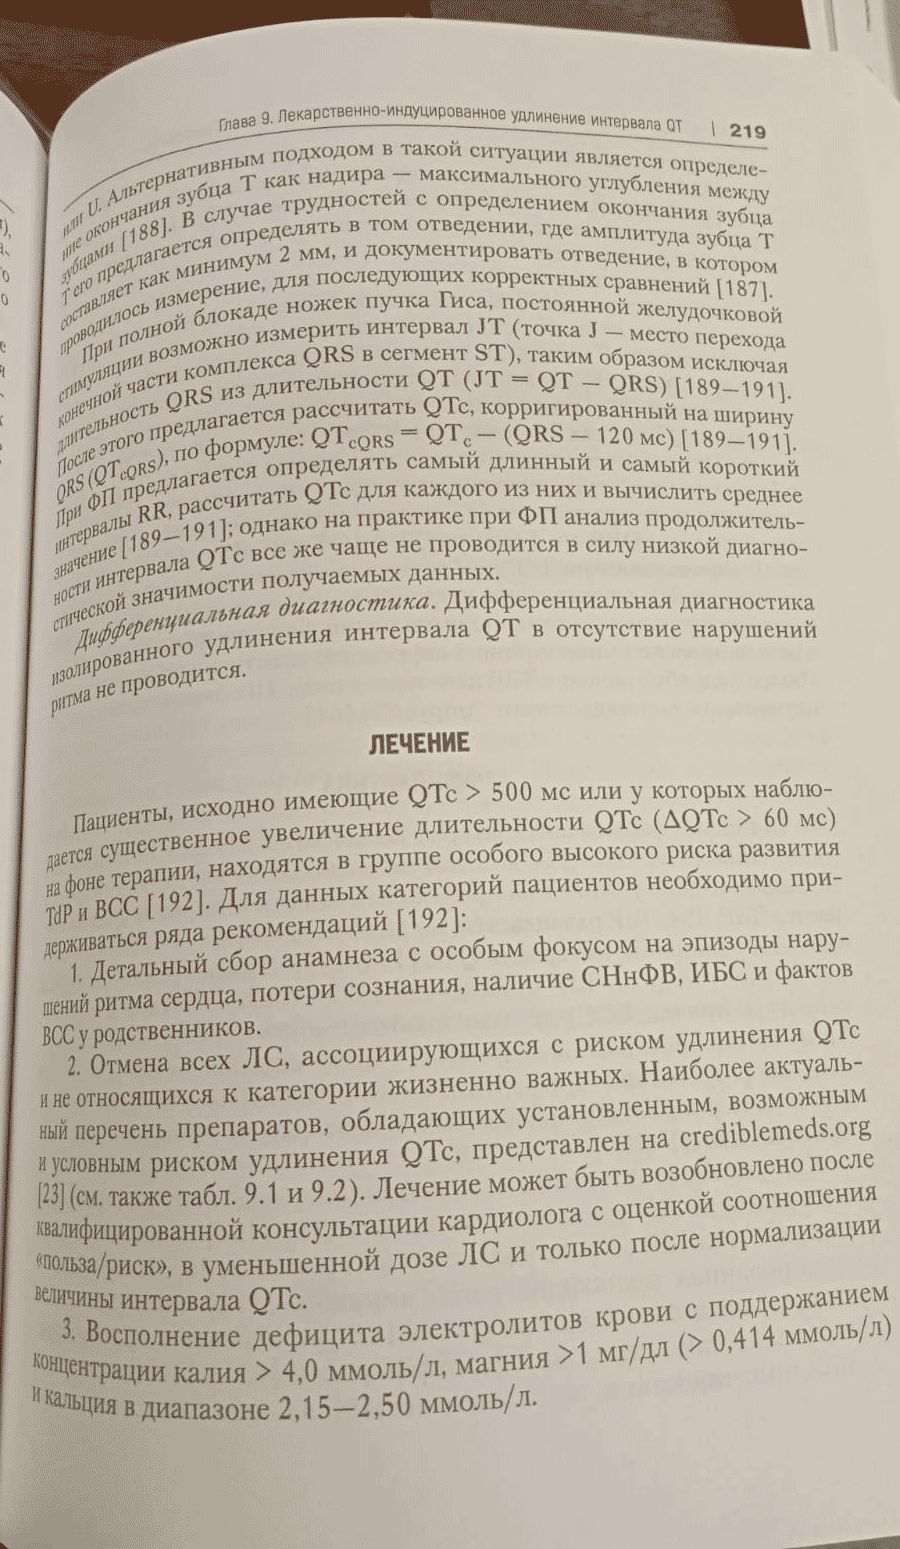 Пример страницы из книги "Лекарственнo-индуцированные заболевания" -  Сычев Д. А.